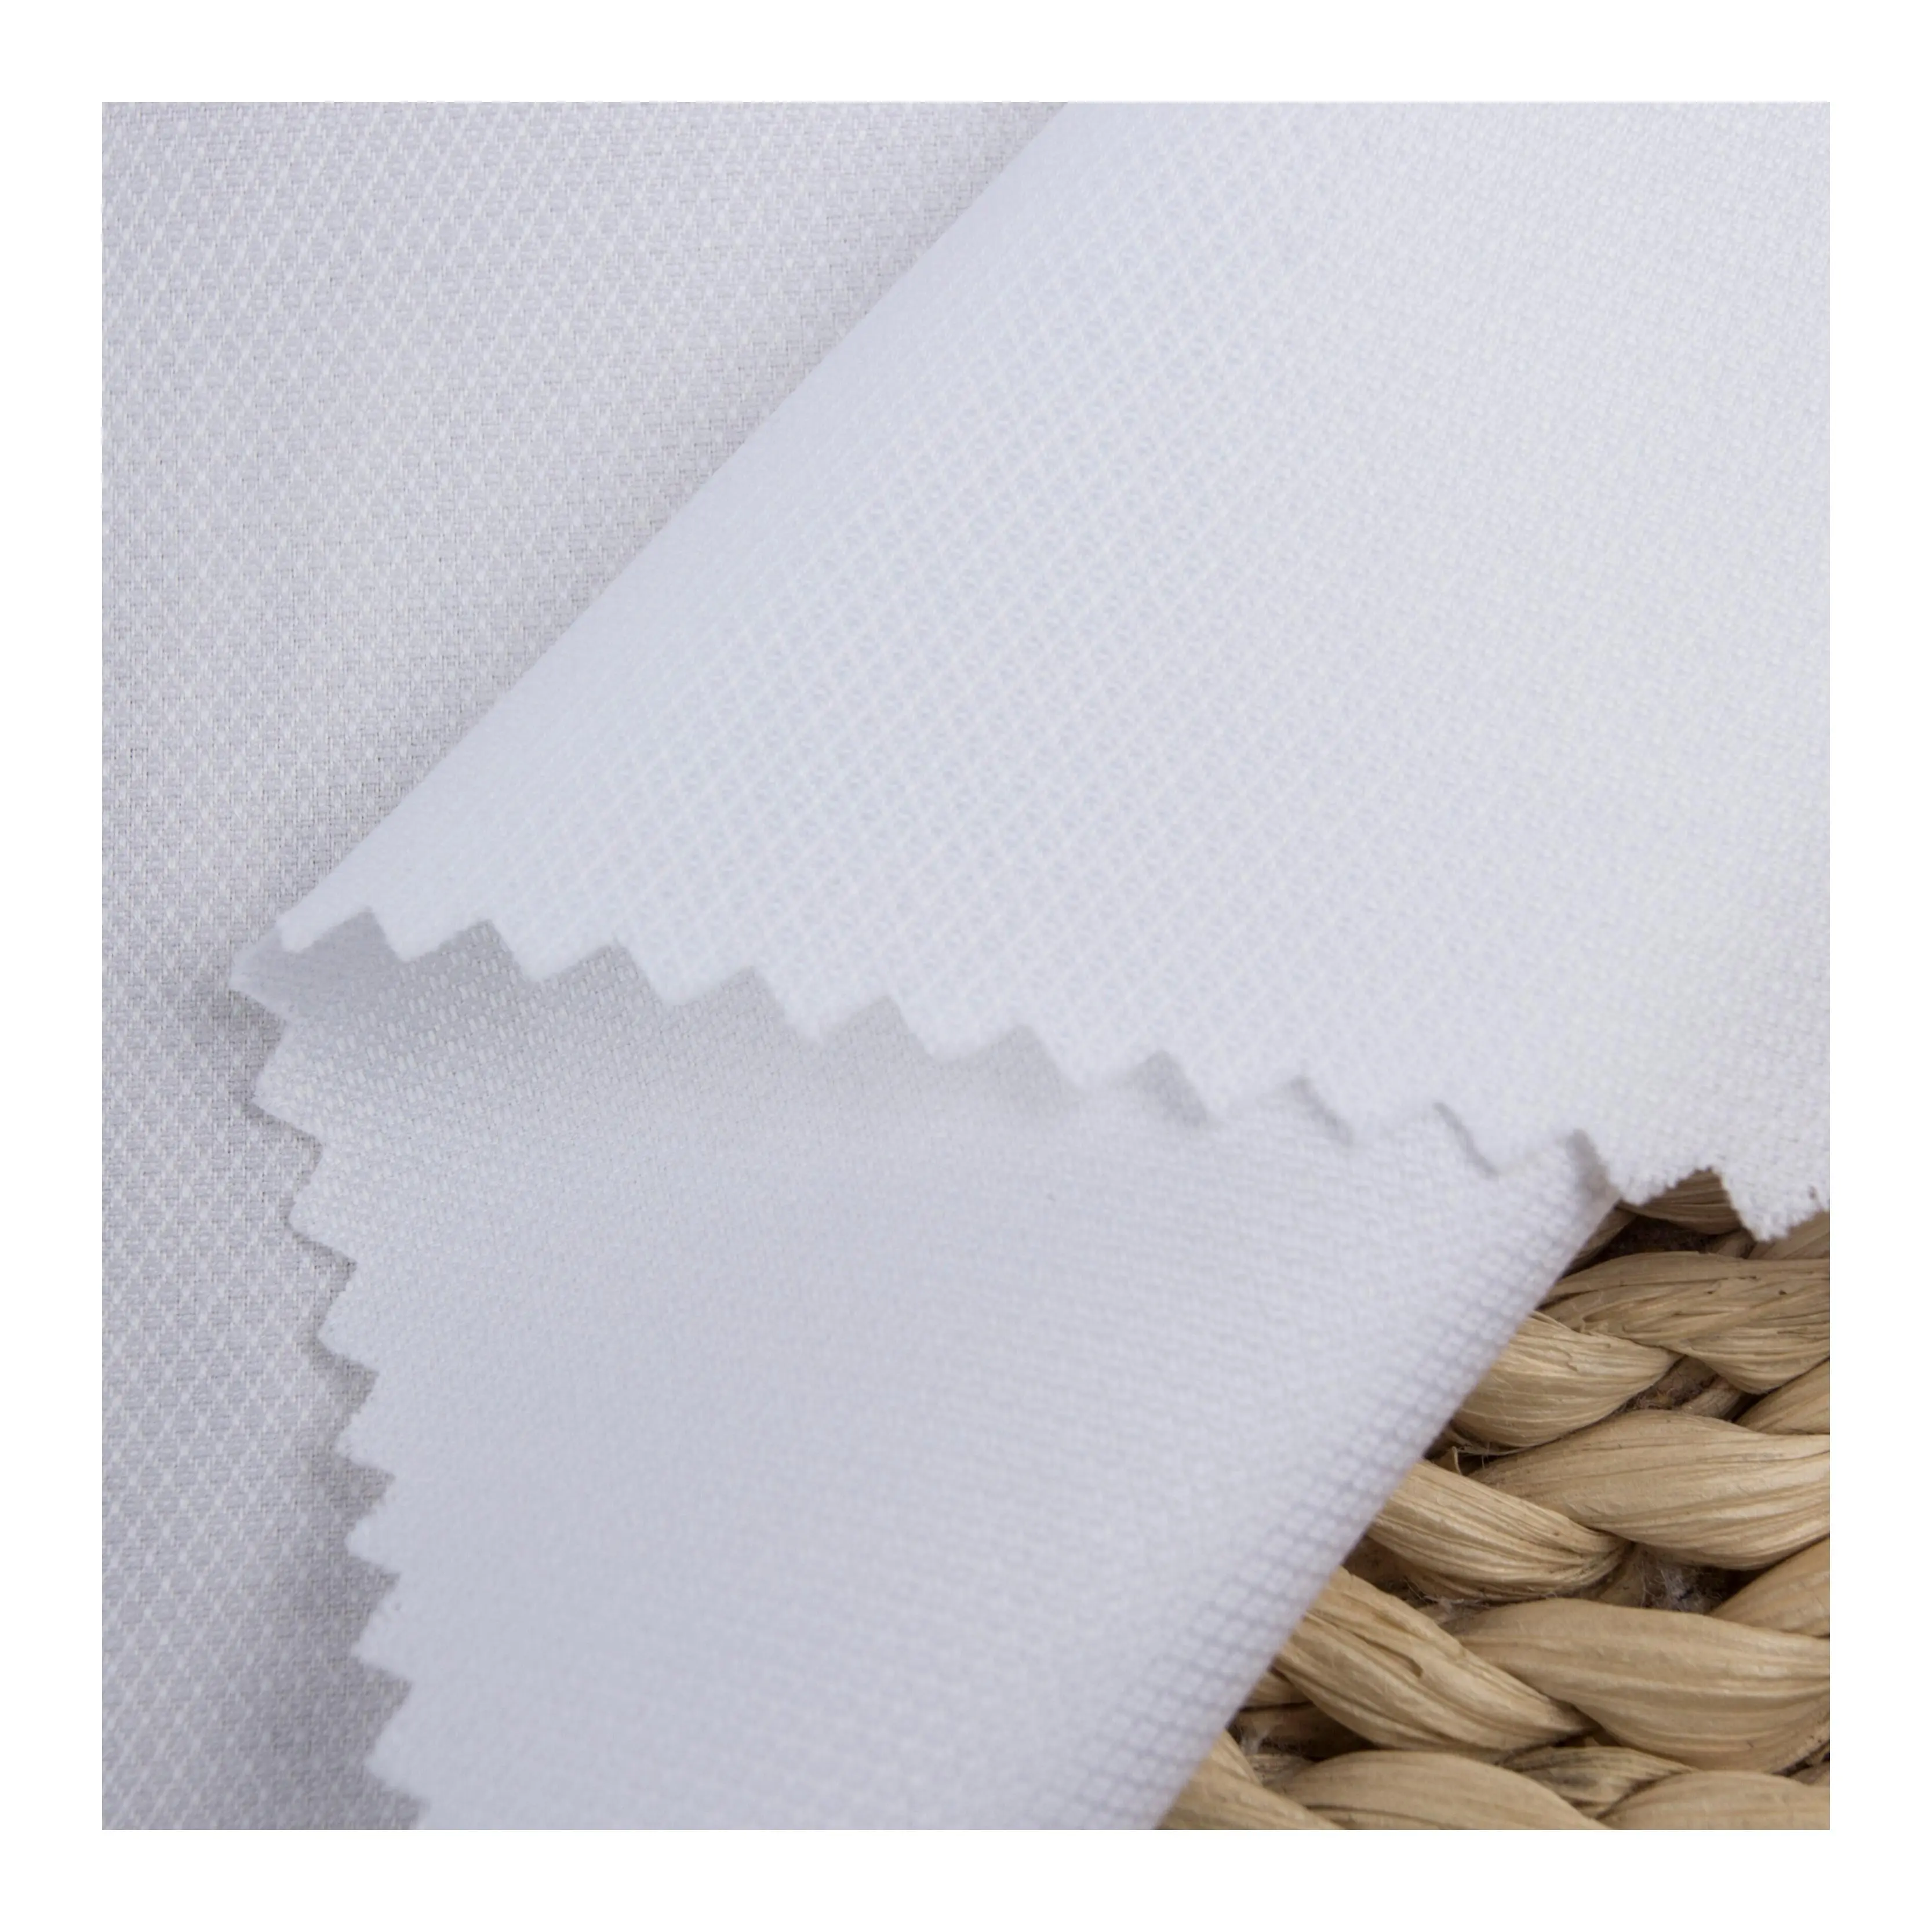 35 스톡 섬유 액체 암모니아 원사 염색 자카드 100% 흰색 면직물 남성 셔츠 의류